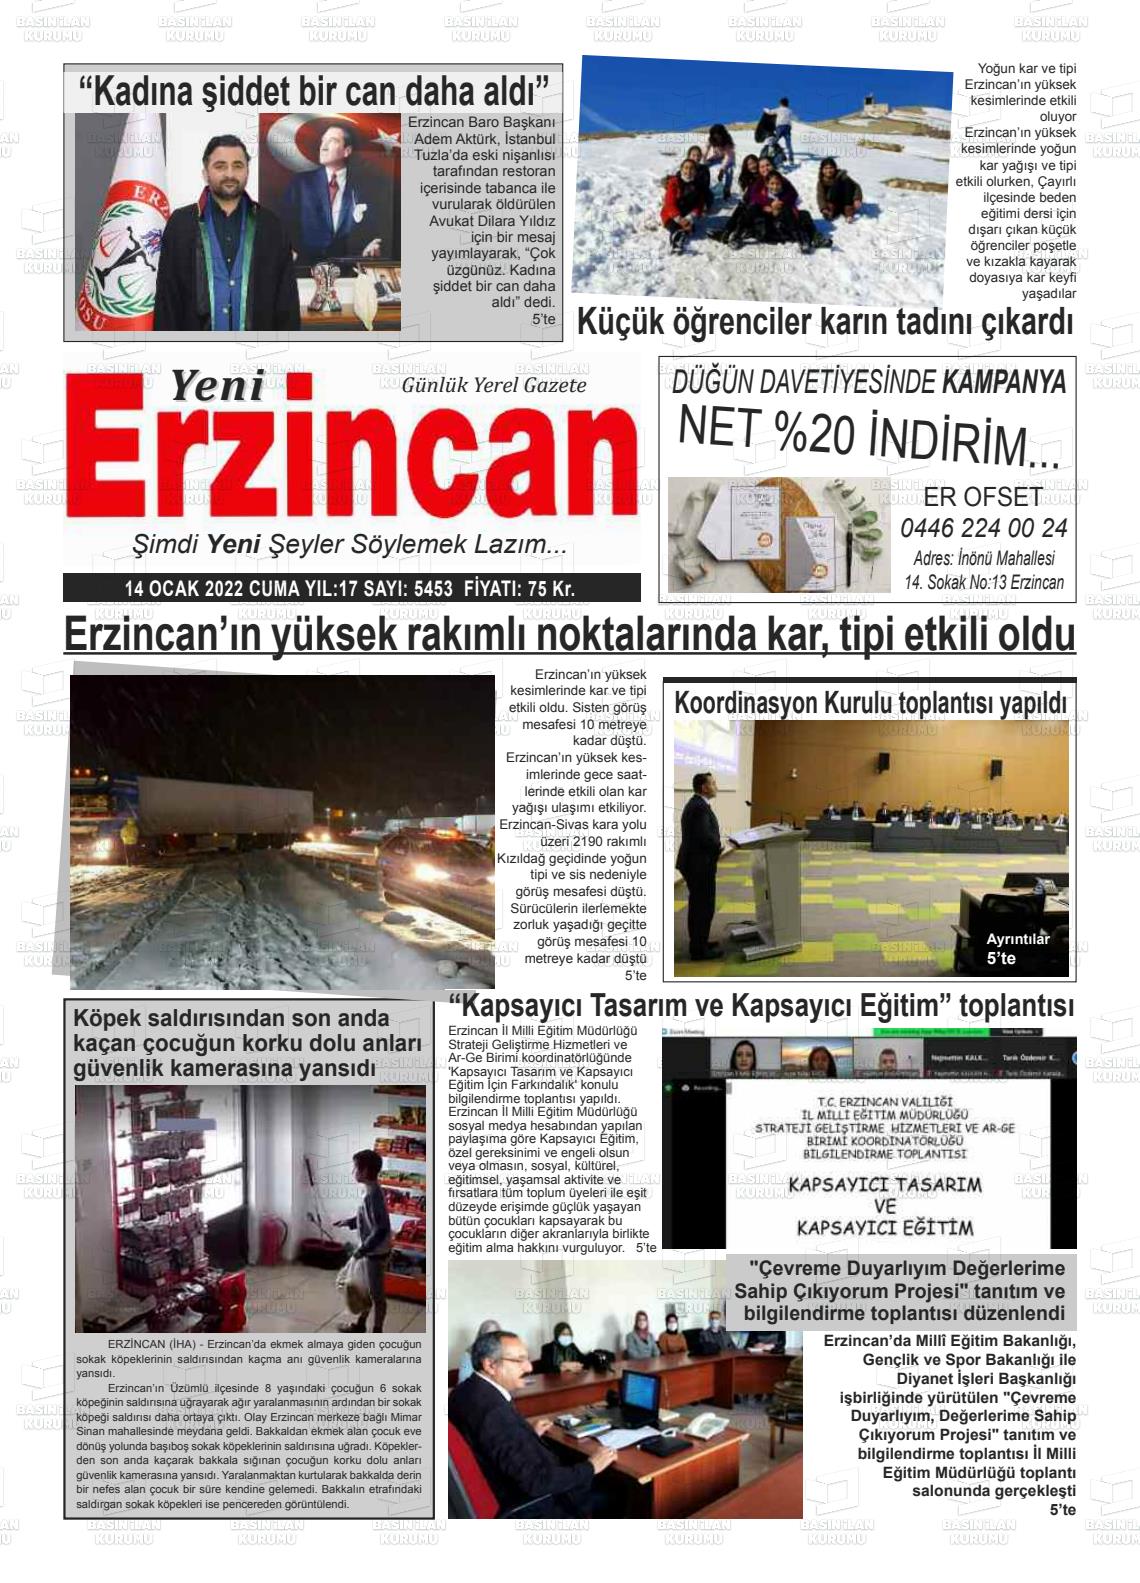 14 Ocak 2022 Yeni Erzincan Gazete Manşeti